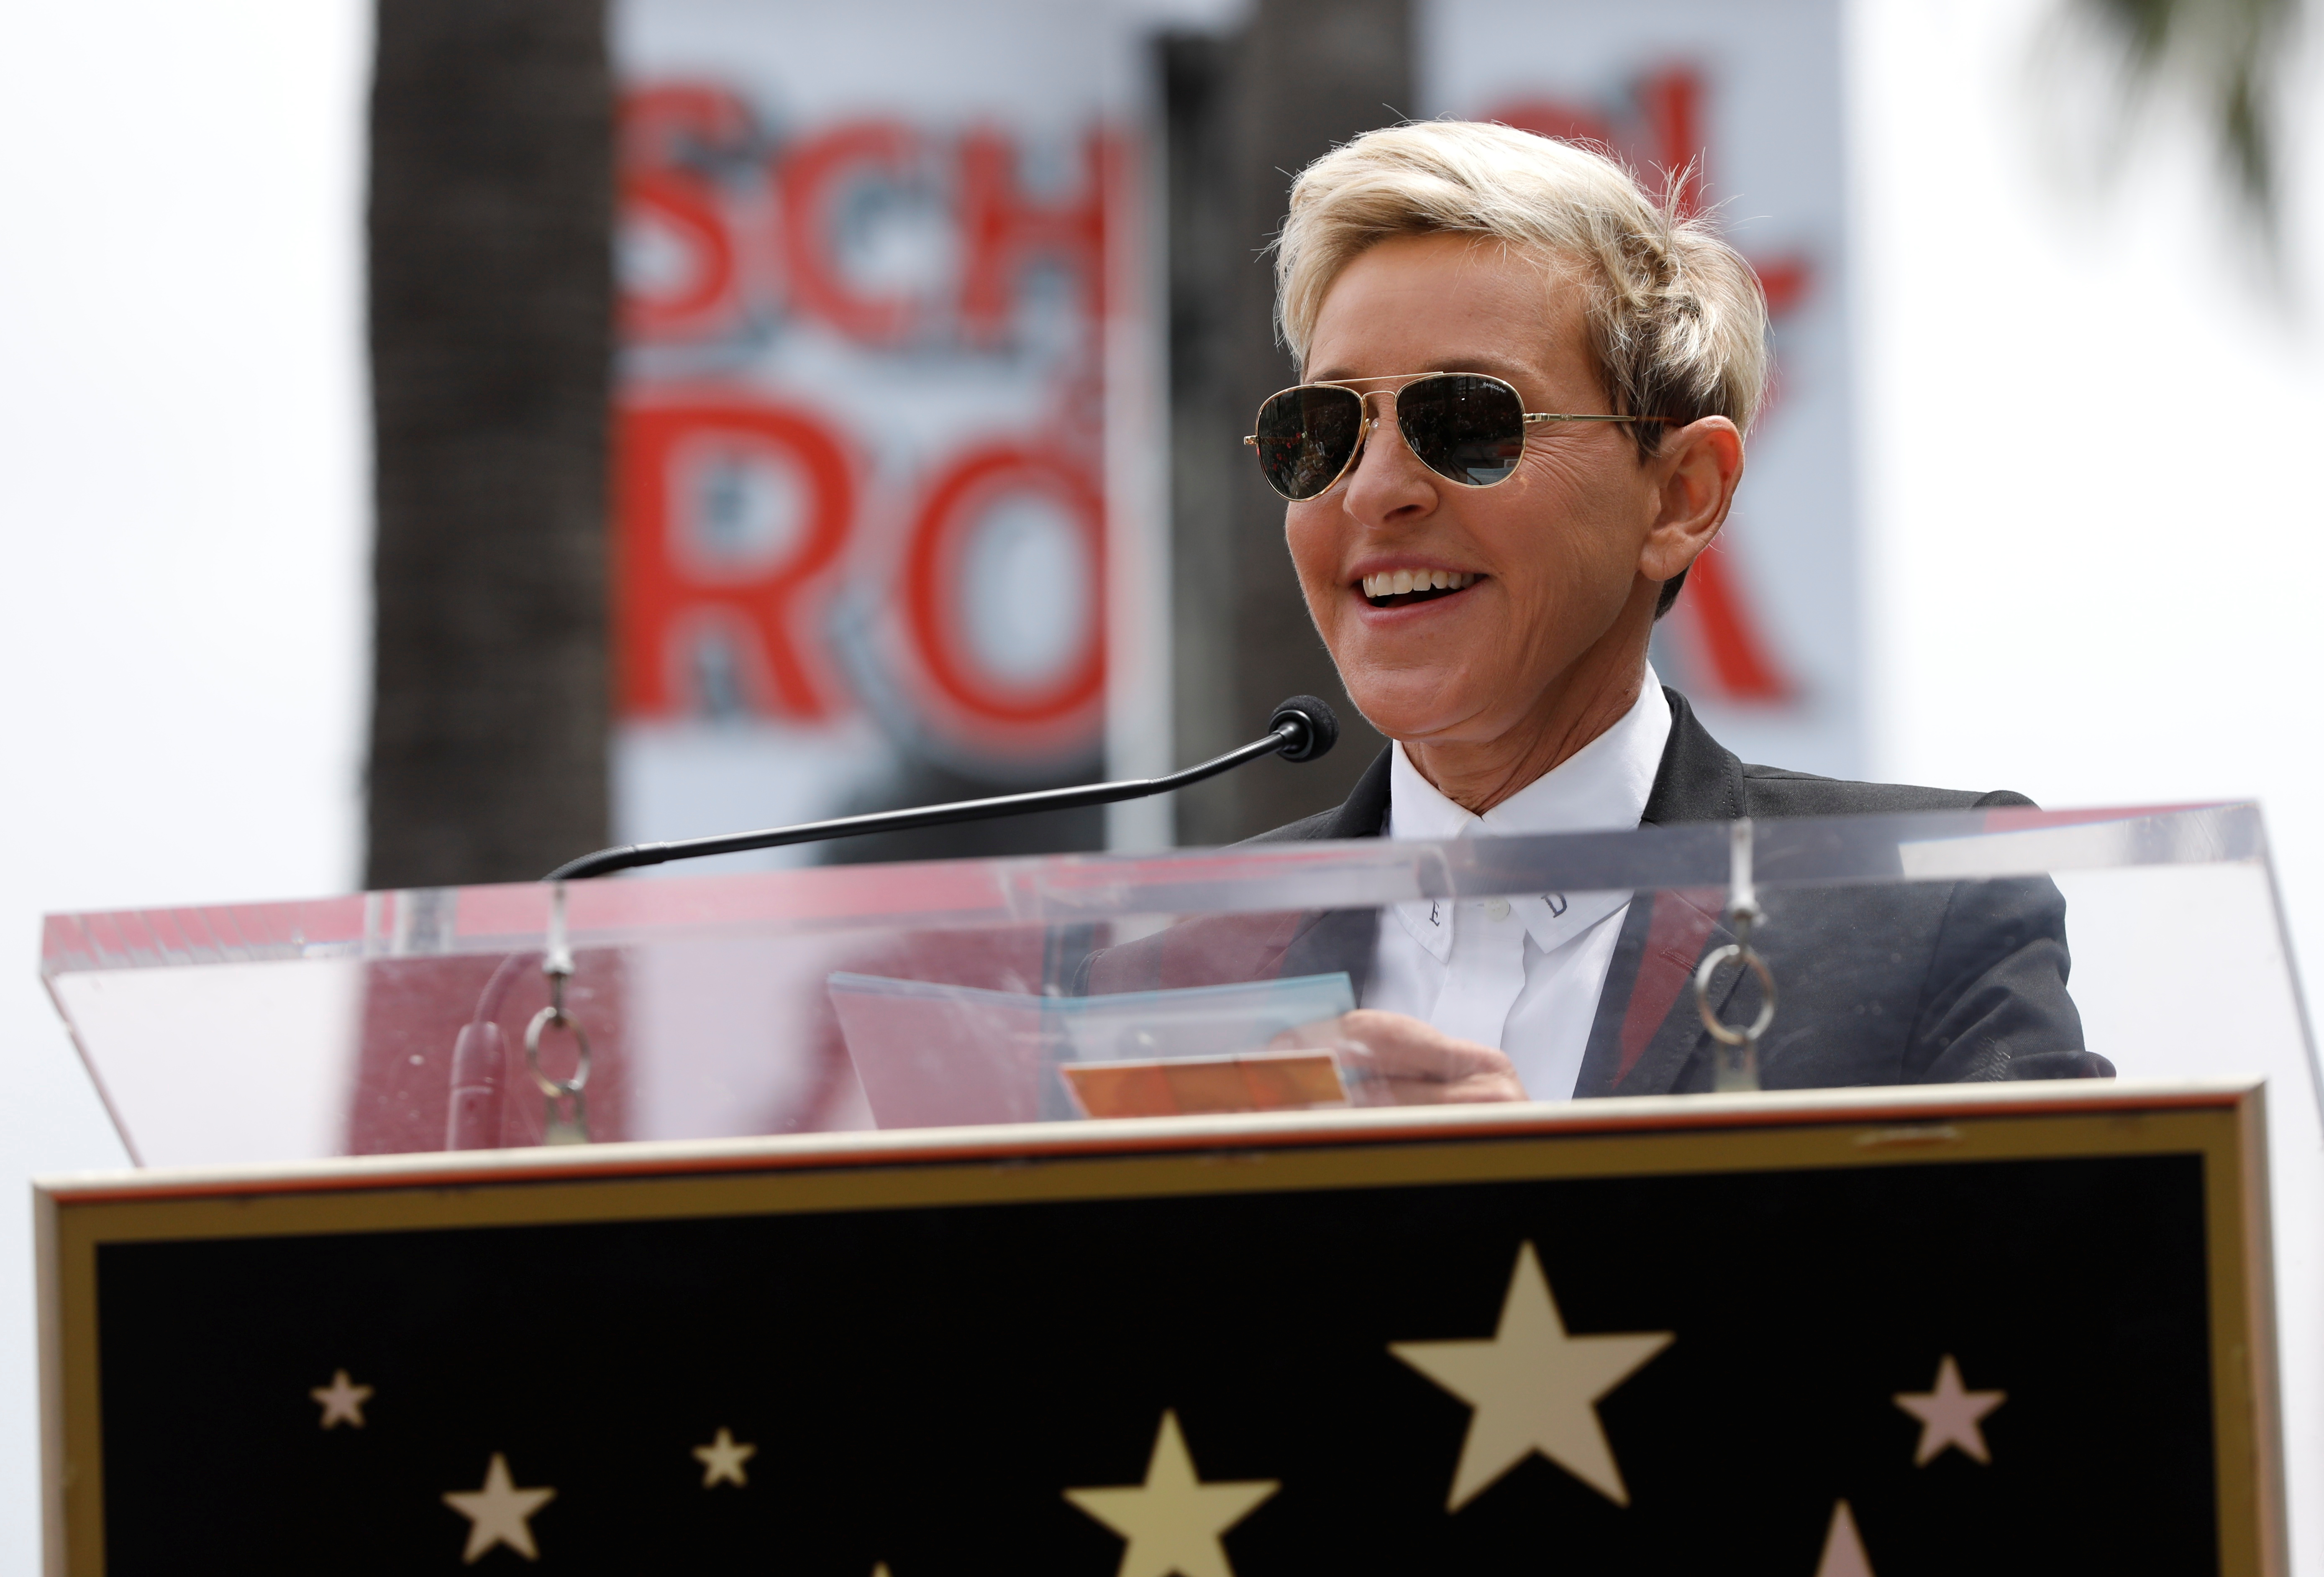 DeGeneres es conocida por pedir que la gente sea amable los unos con los otros (Foto: REUTERS/Mario Anzuoni)